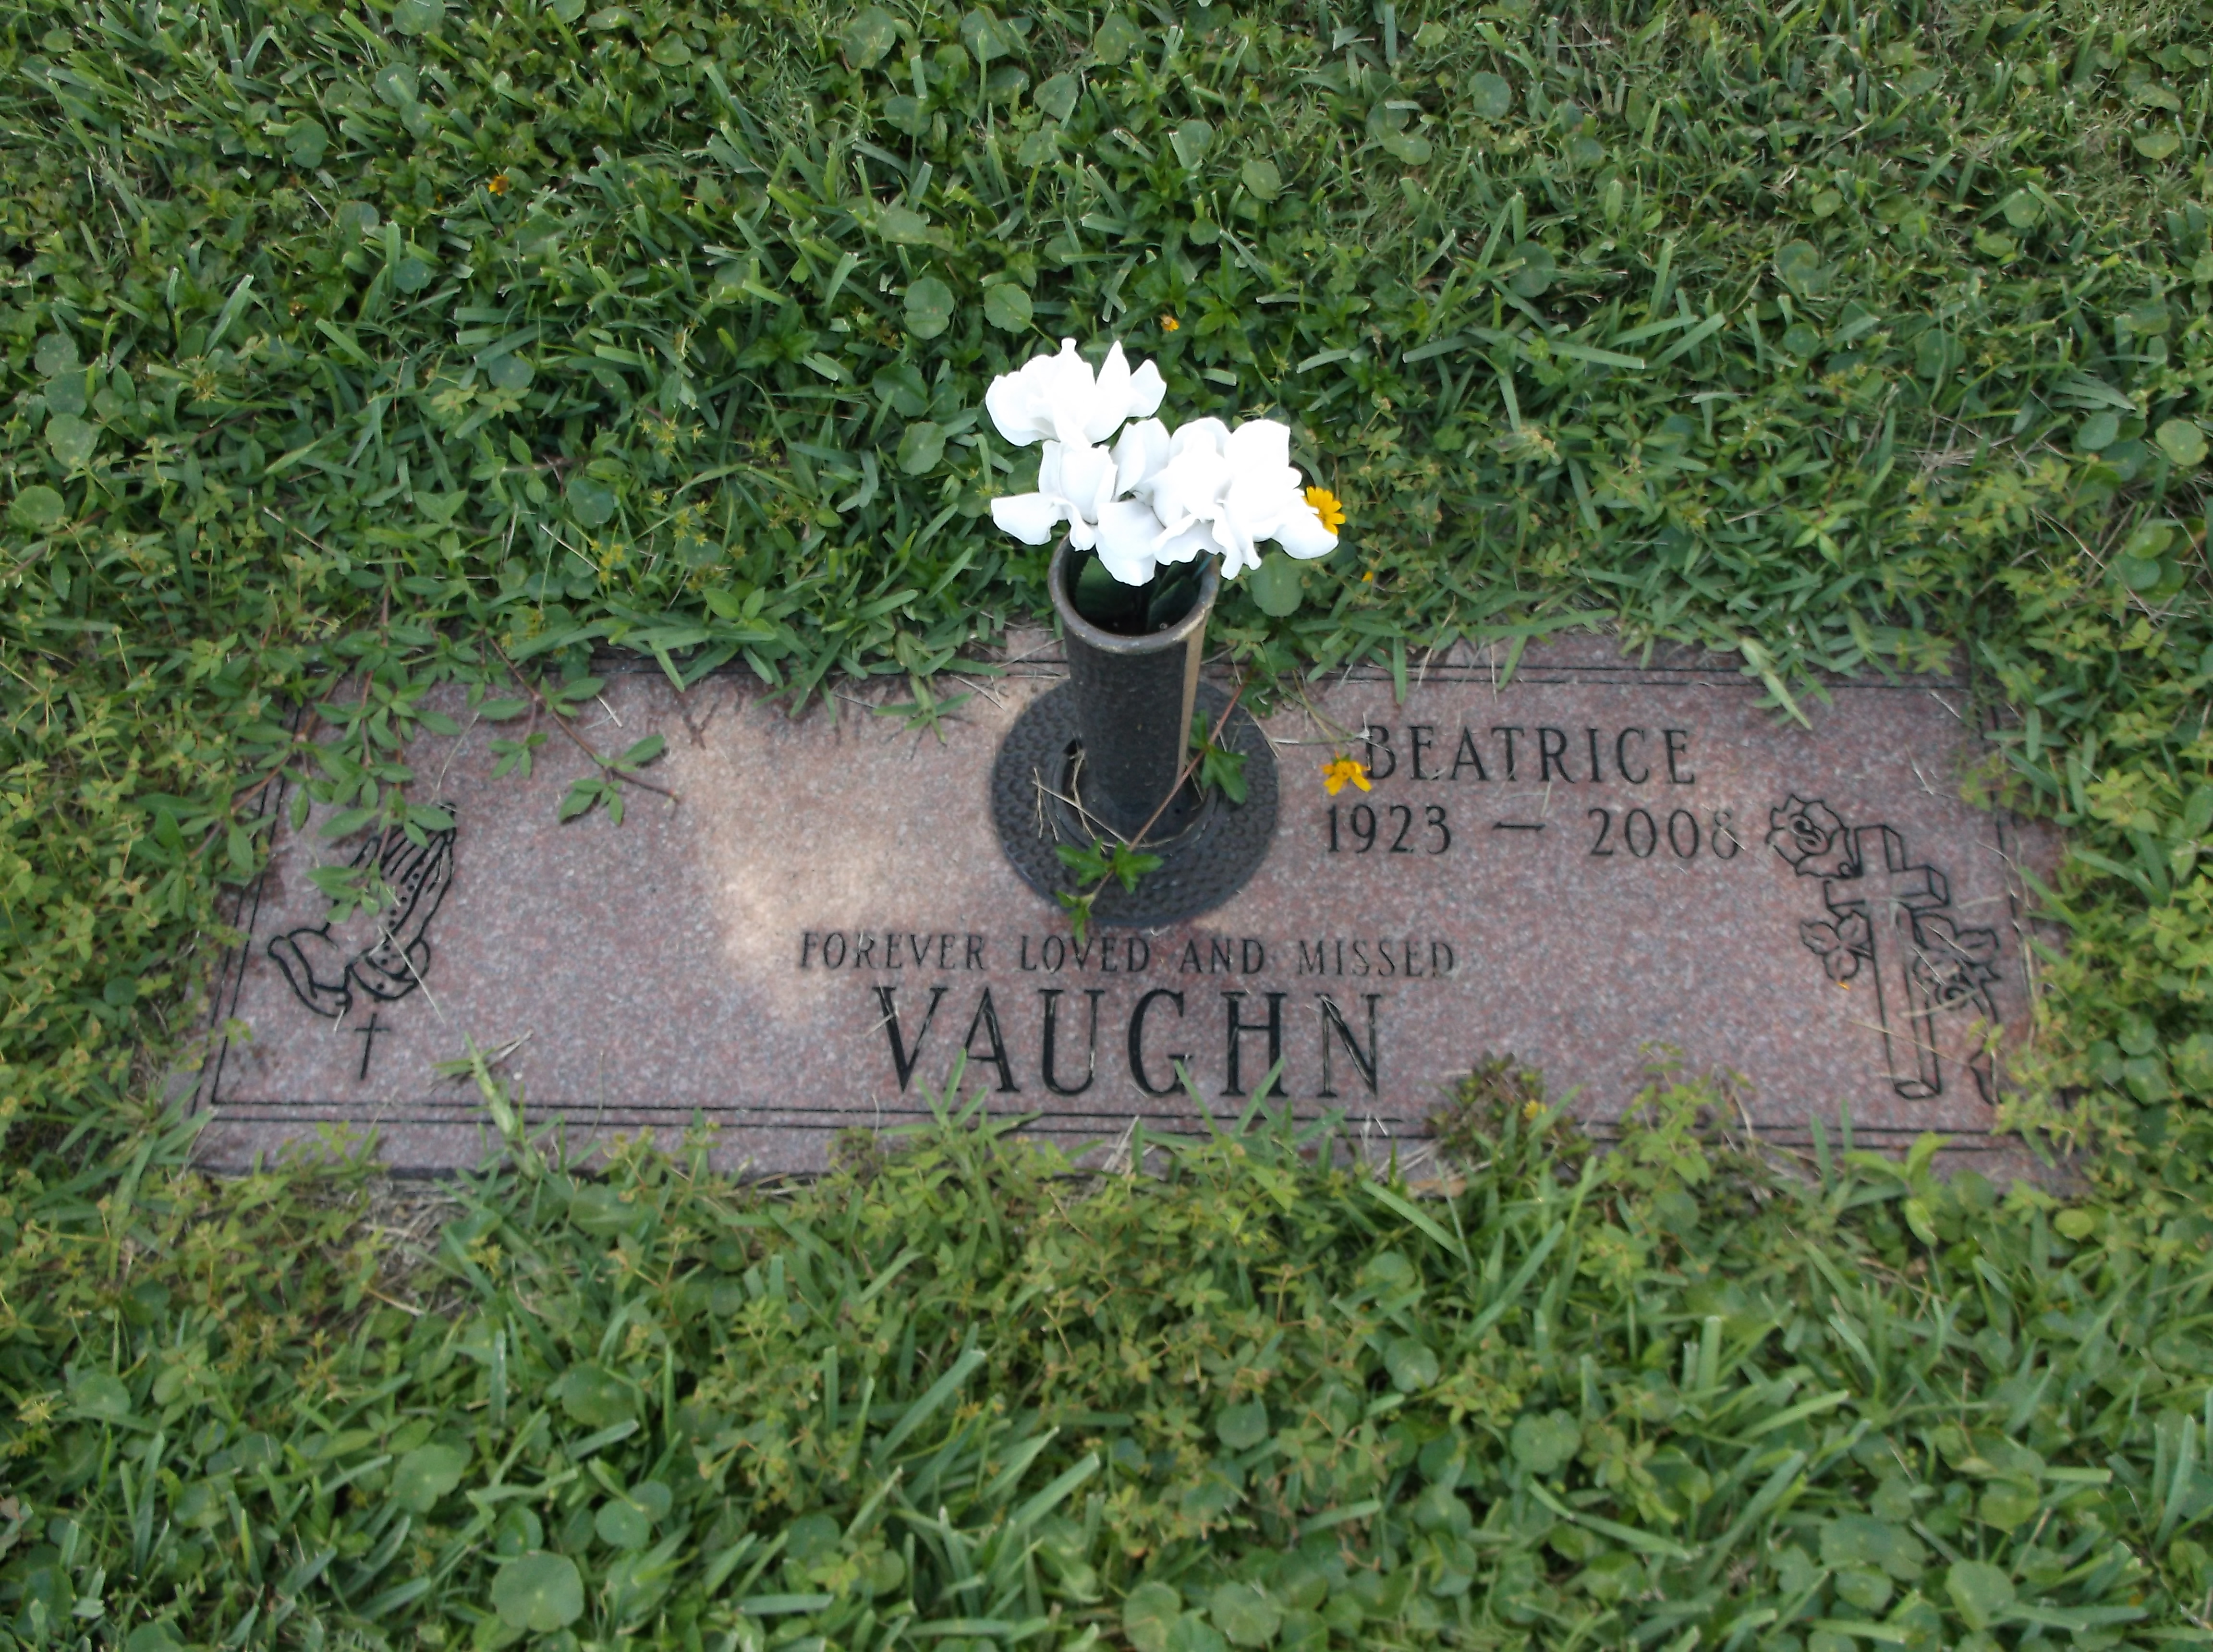 Beatrice Vaughn